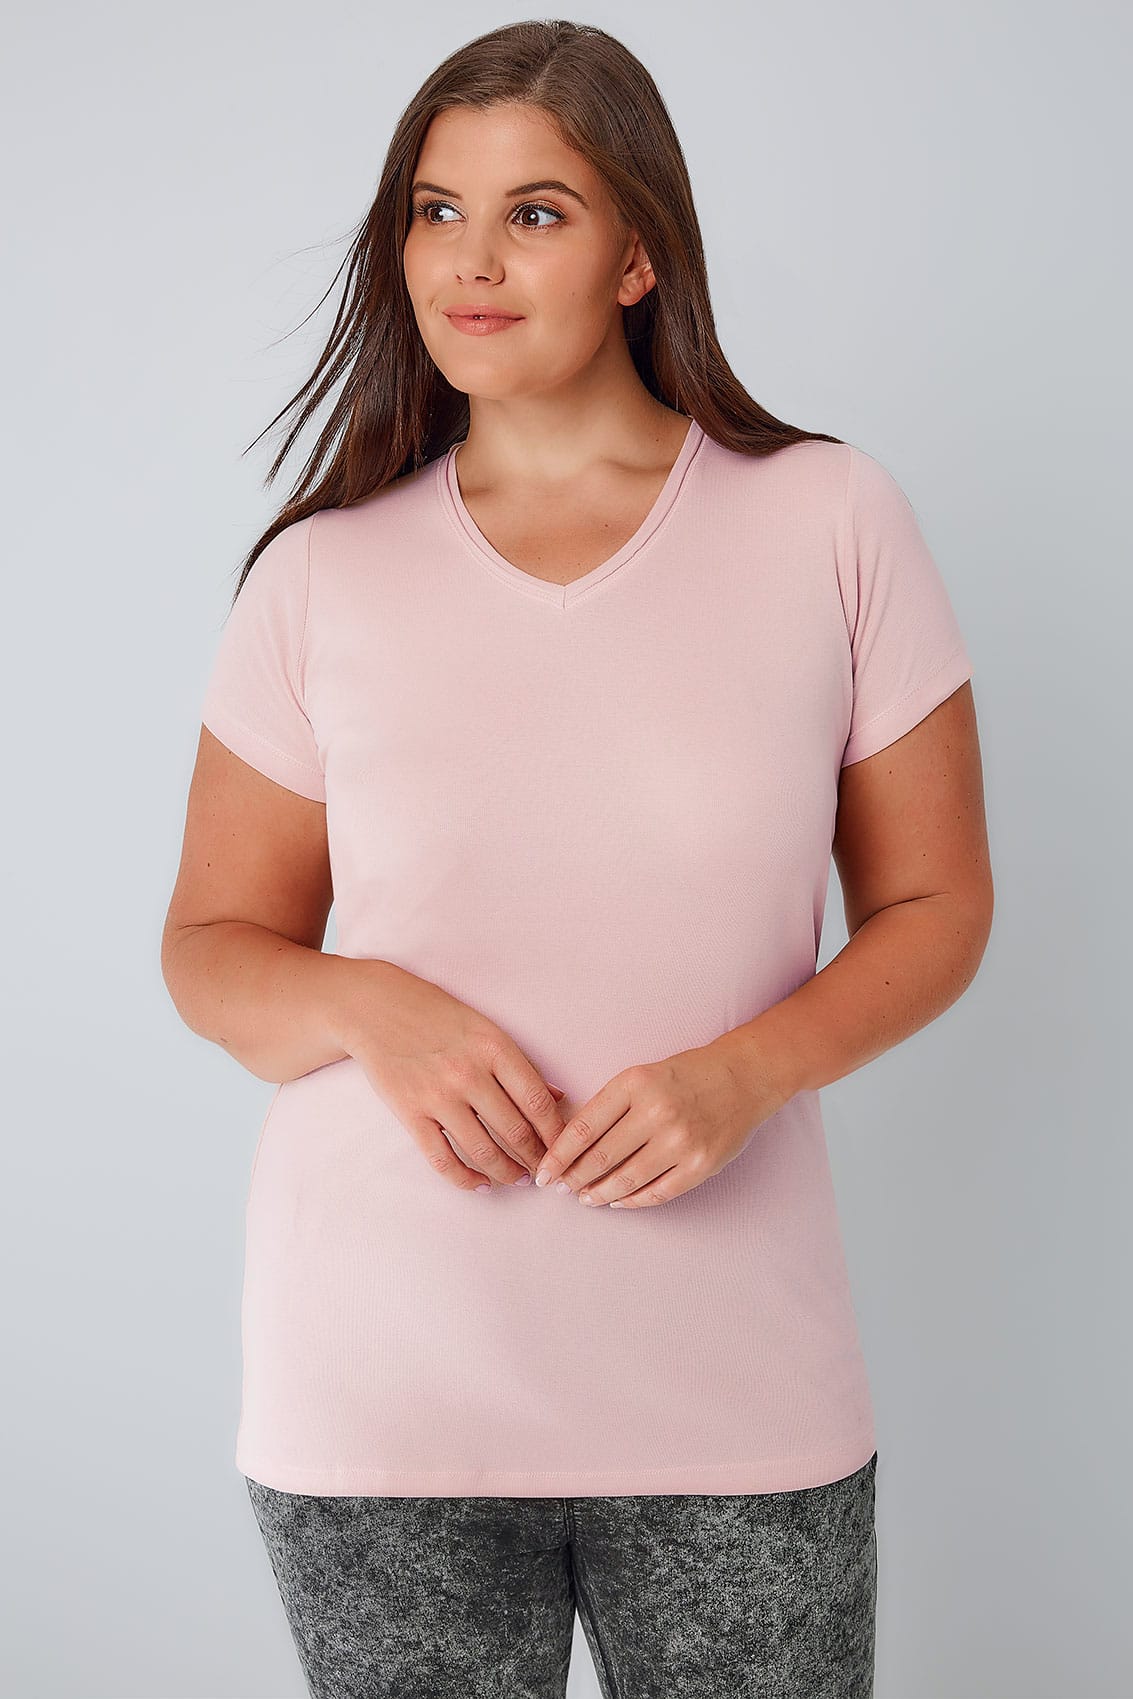 Blush Pink Short Sleeved V Neck Basic T Shirt Plus Size 16 To 36